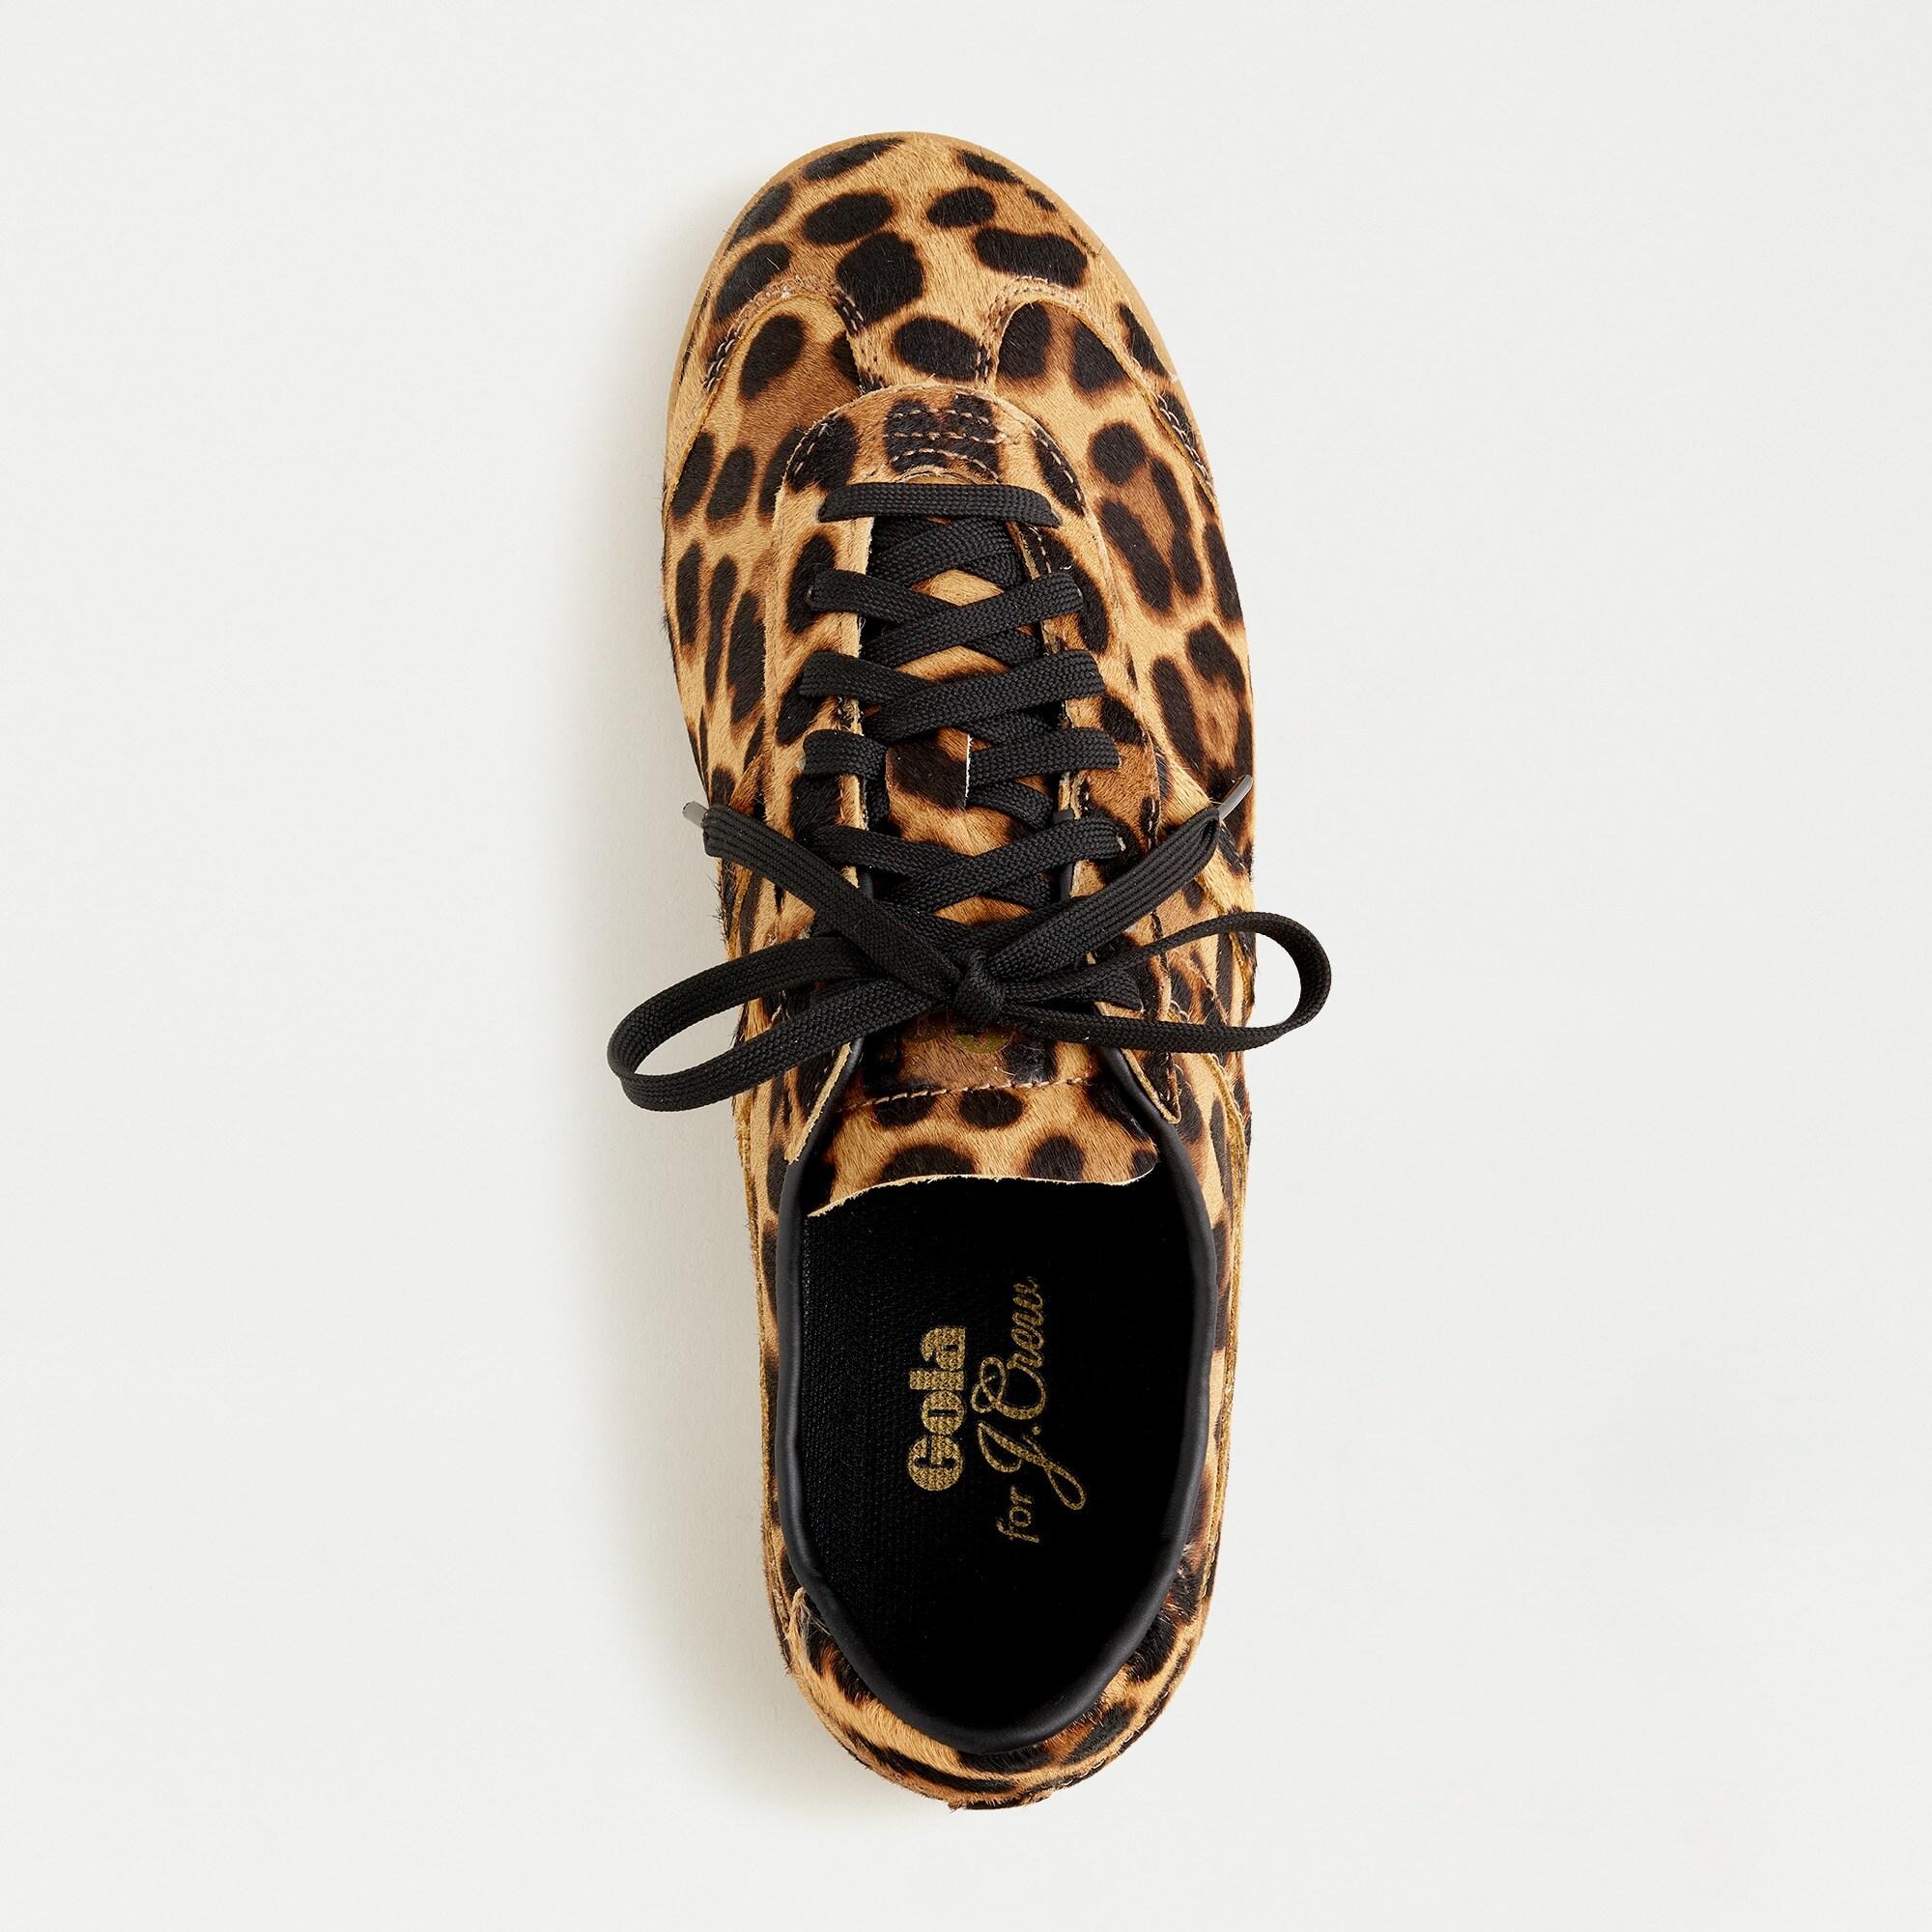 gola leopard sneakers